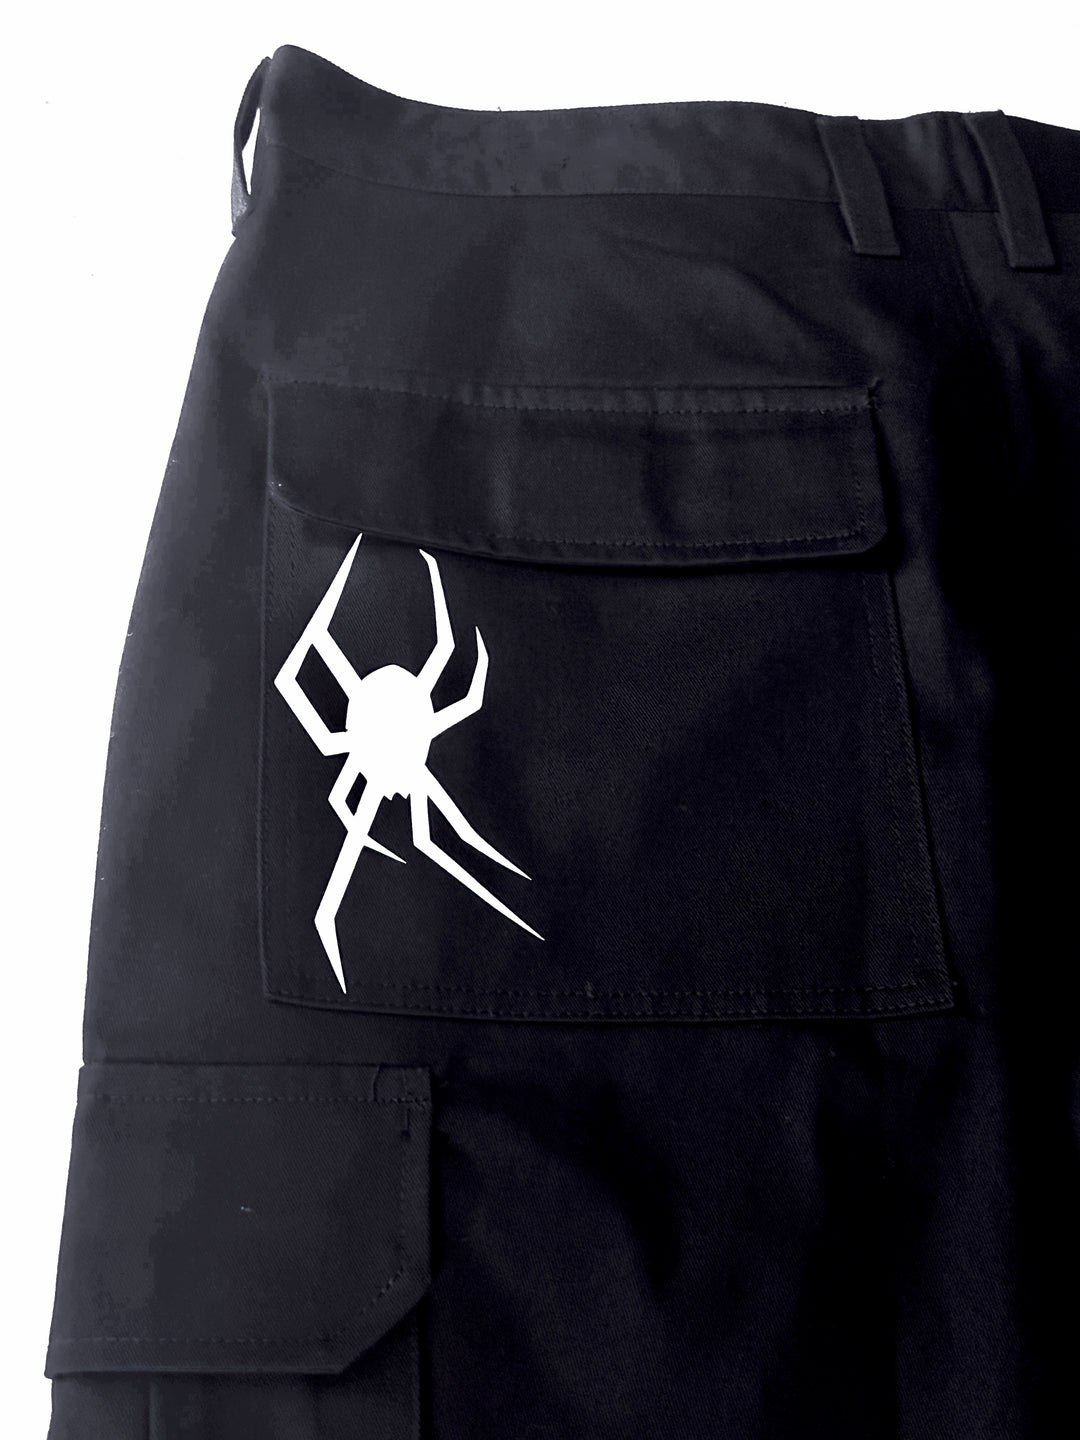 Spider Cargo Pants V.1